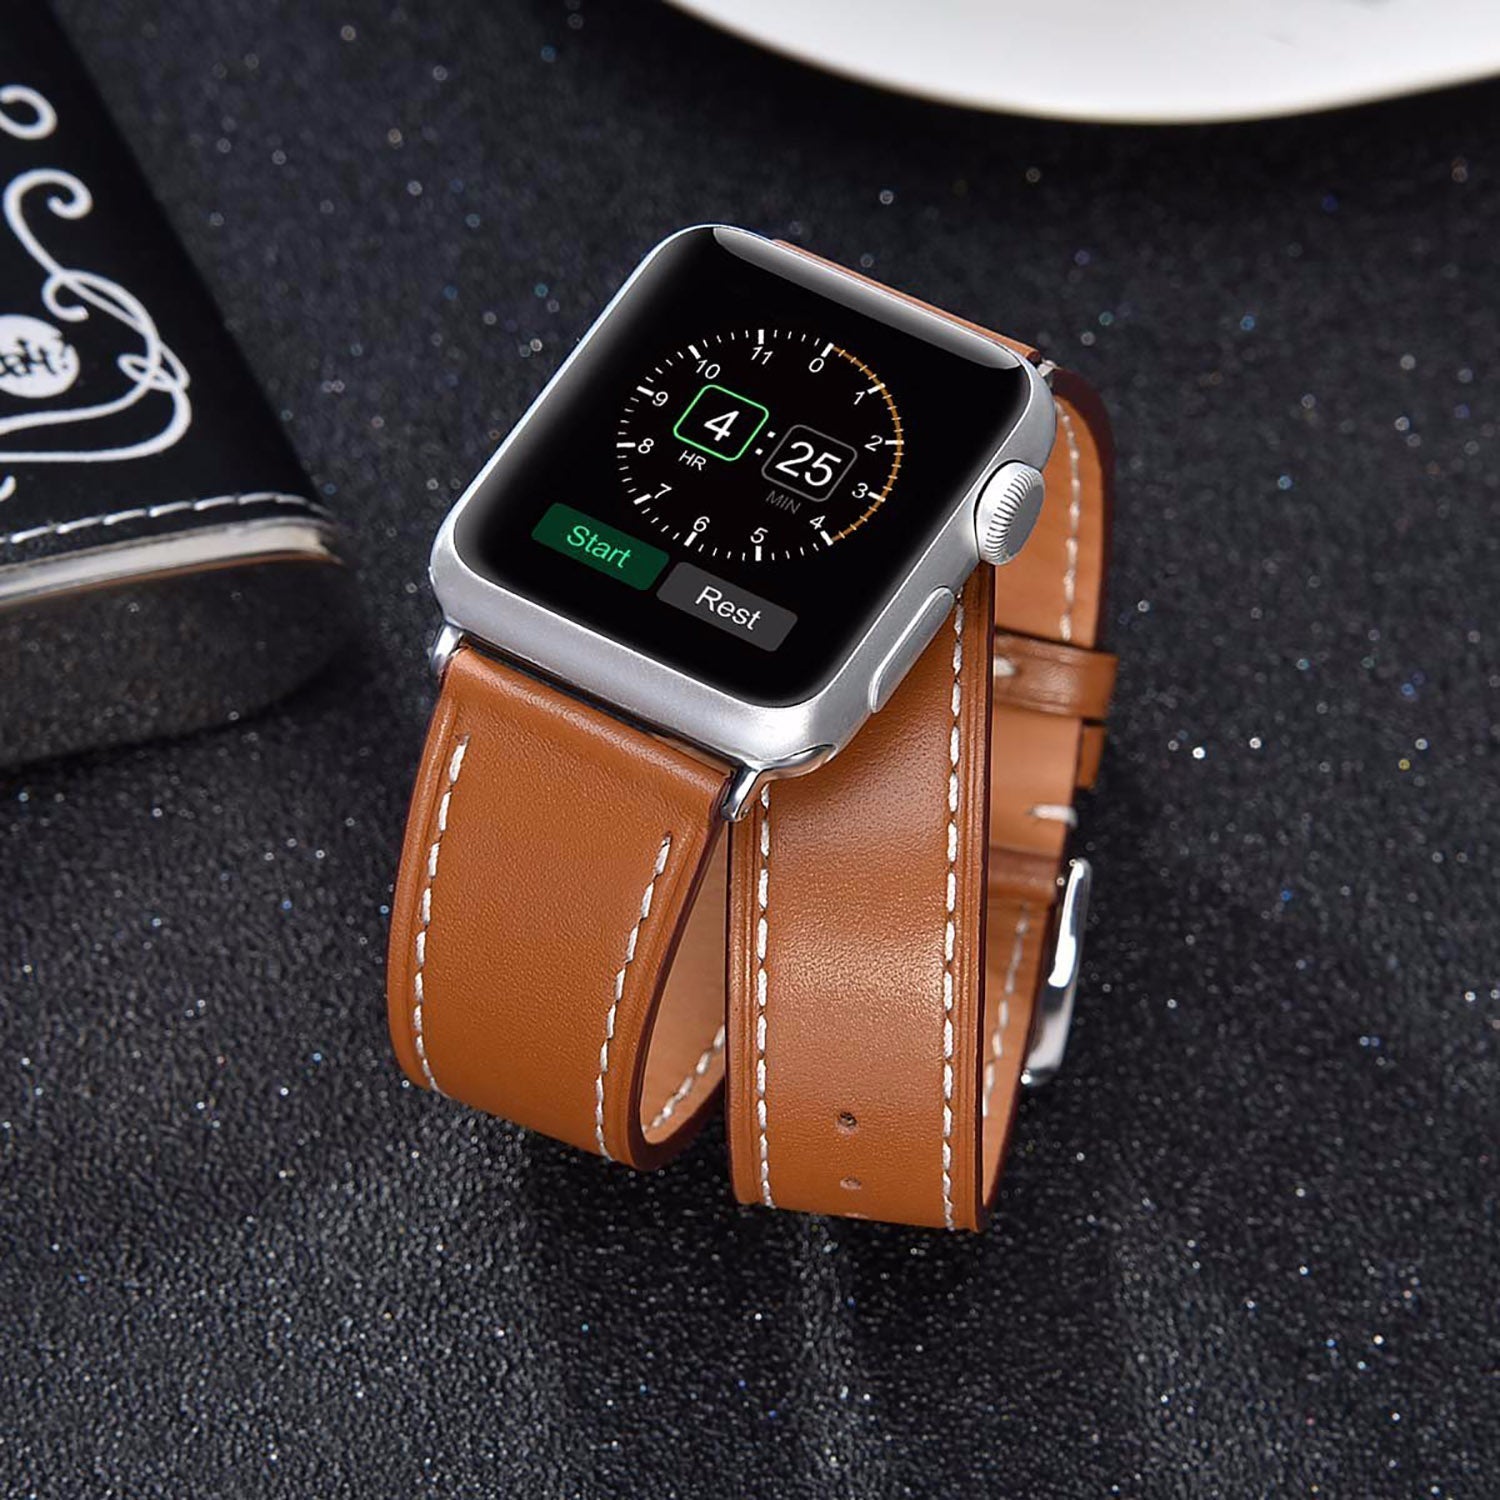 Spotlight Bracelet For Apple Watch